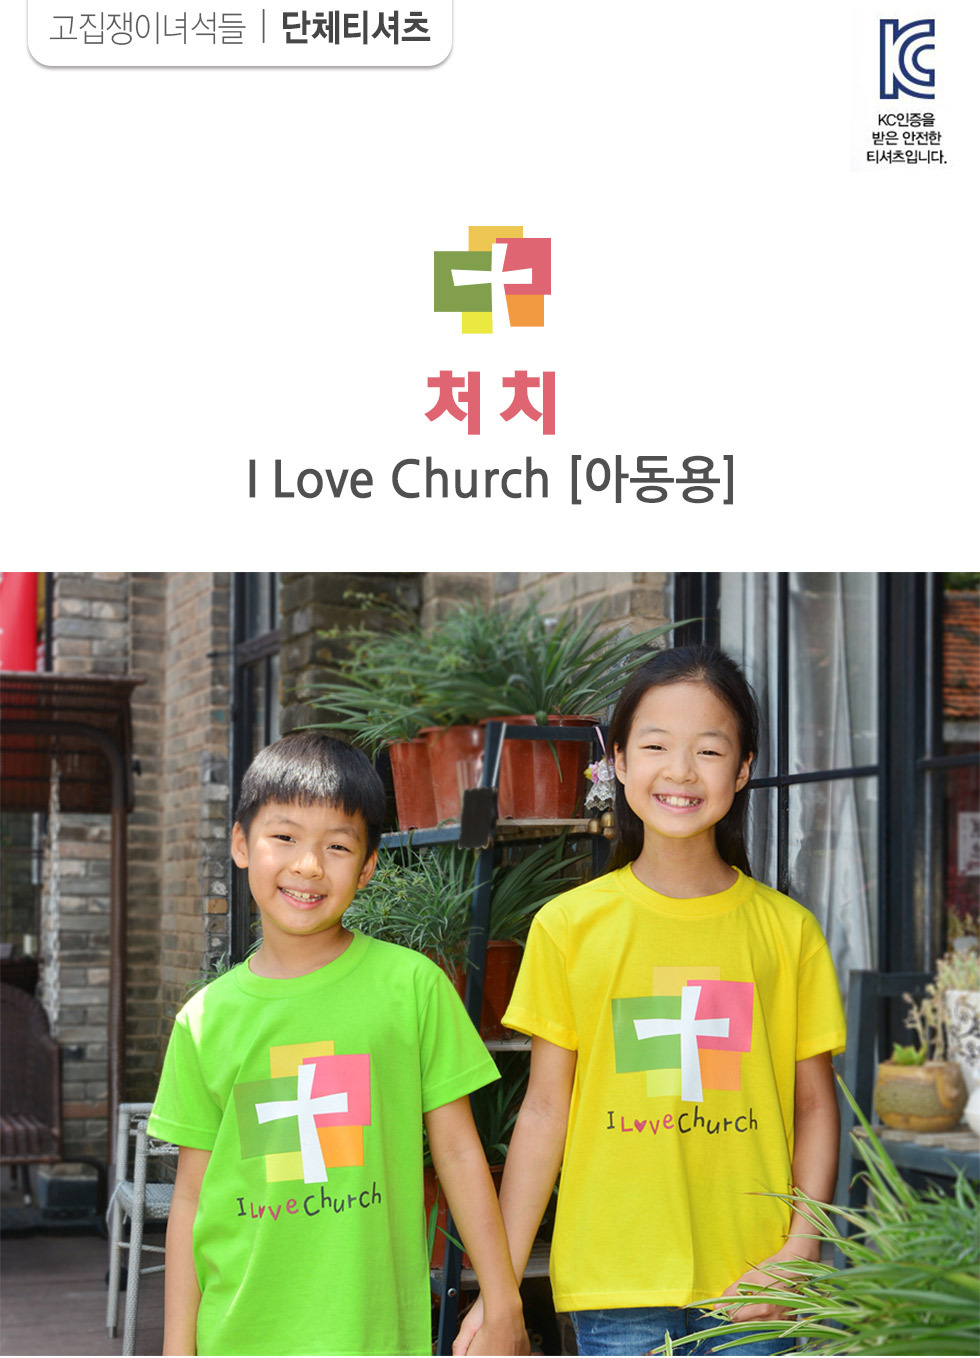 교회단체티 교회티셔츠 I Love Church 처치 아동용 intro